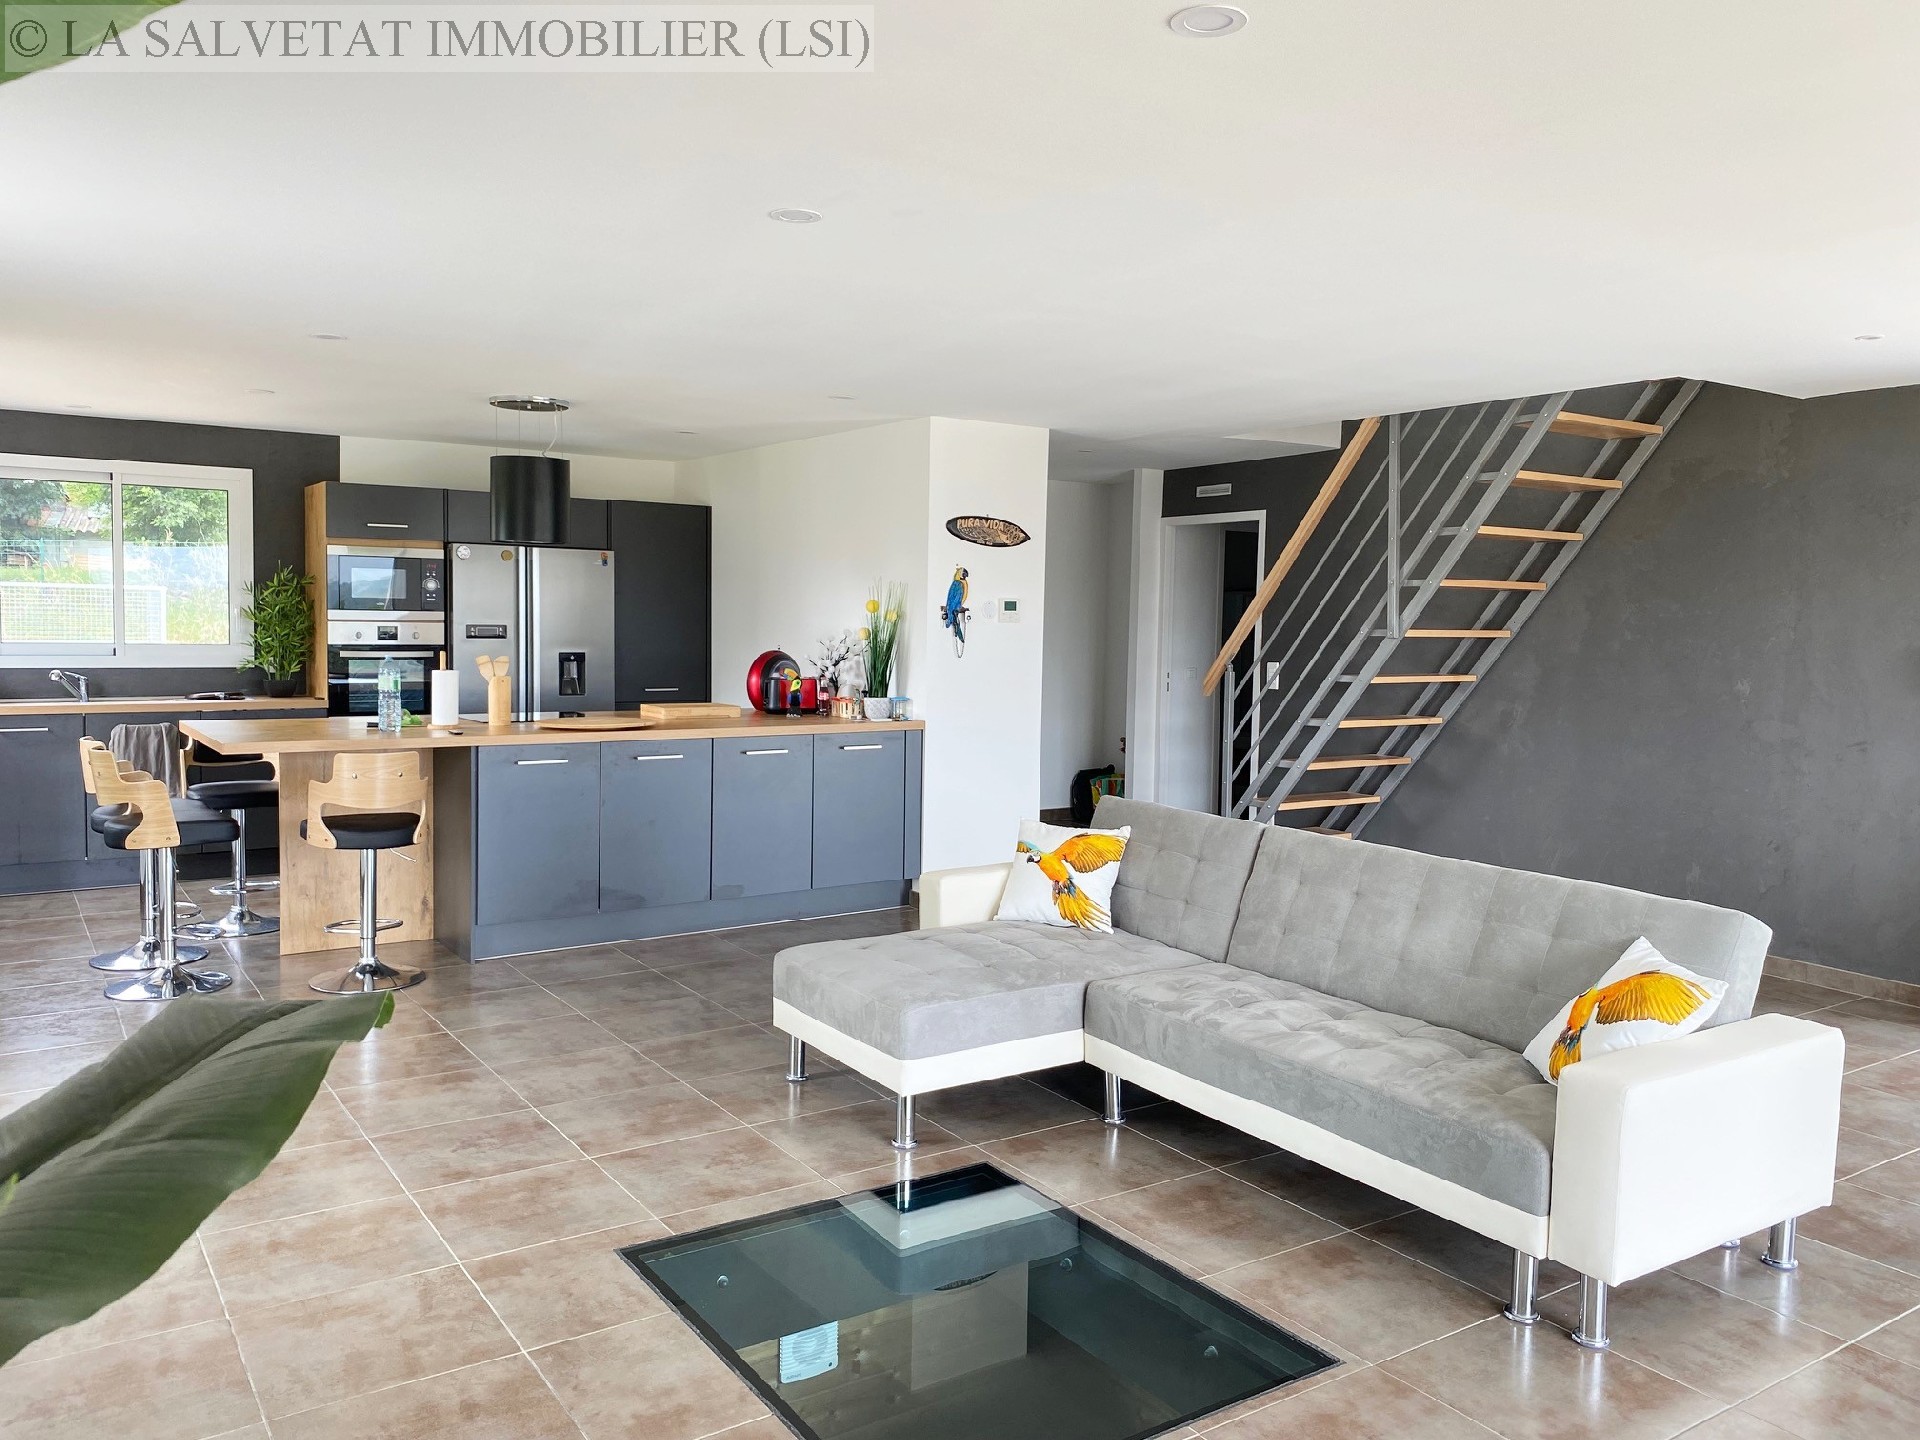 Vente maison-villa - ST THOMAS<br>155 m², 5 pièces